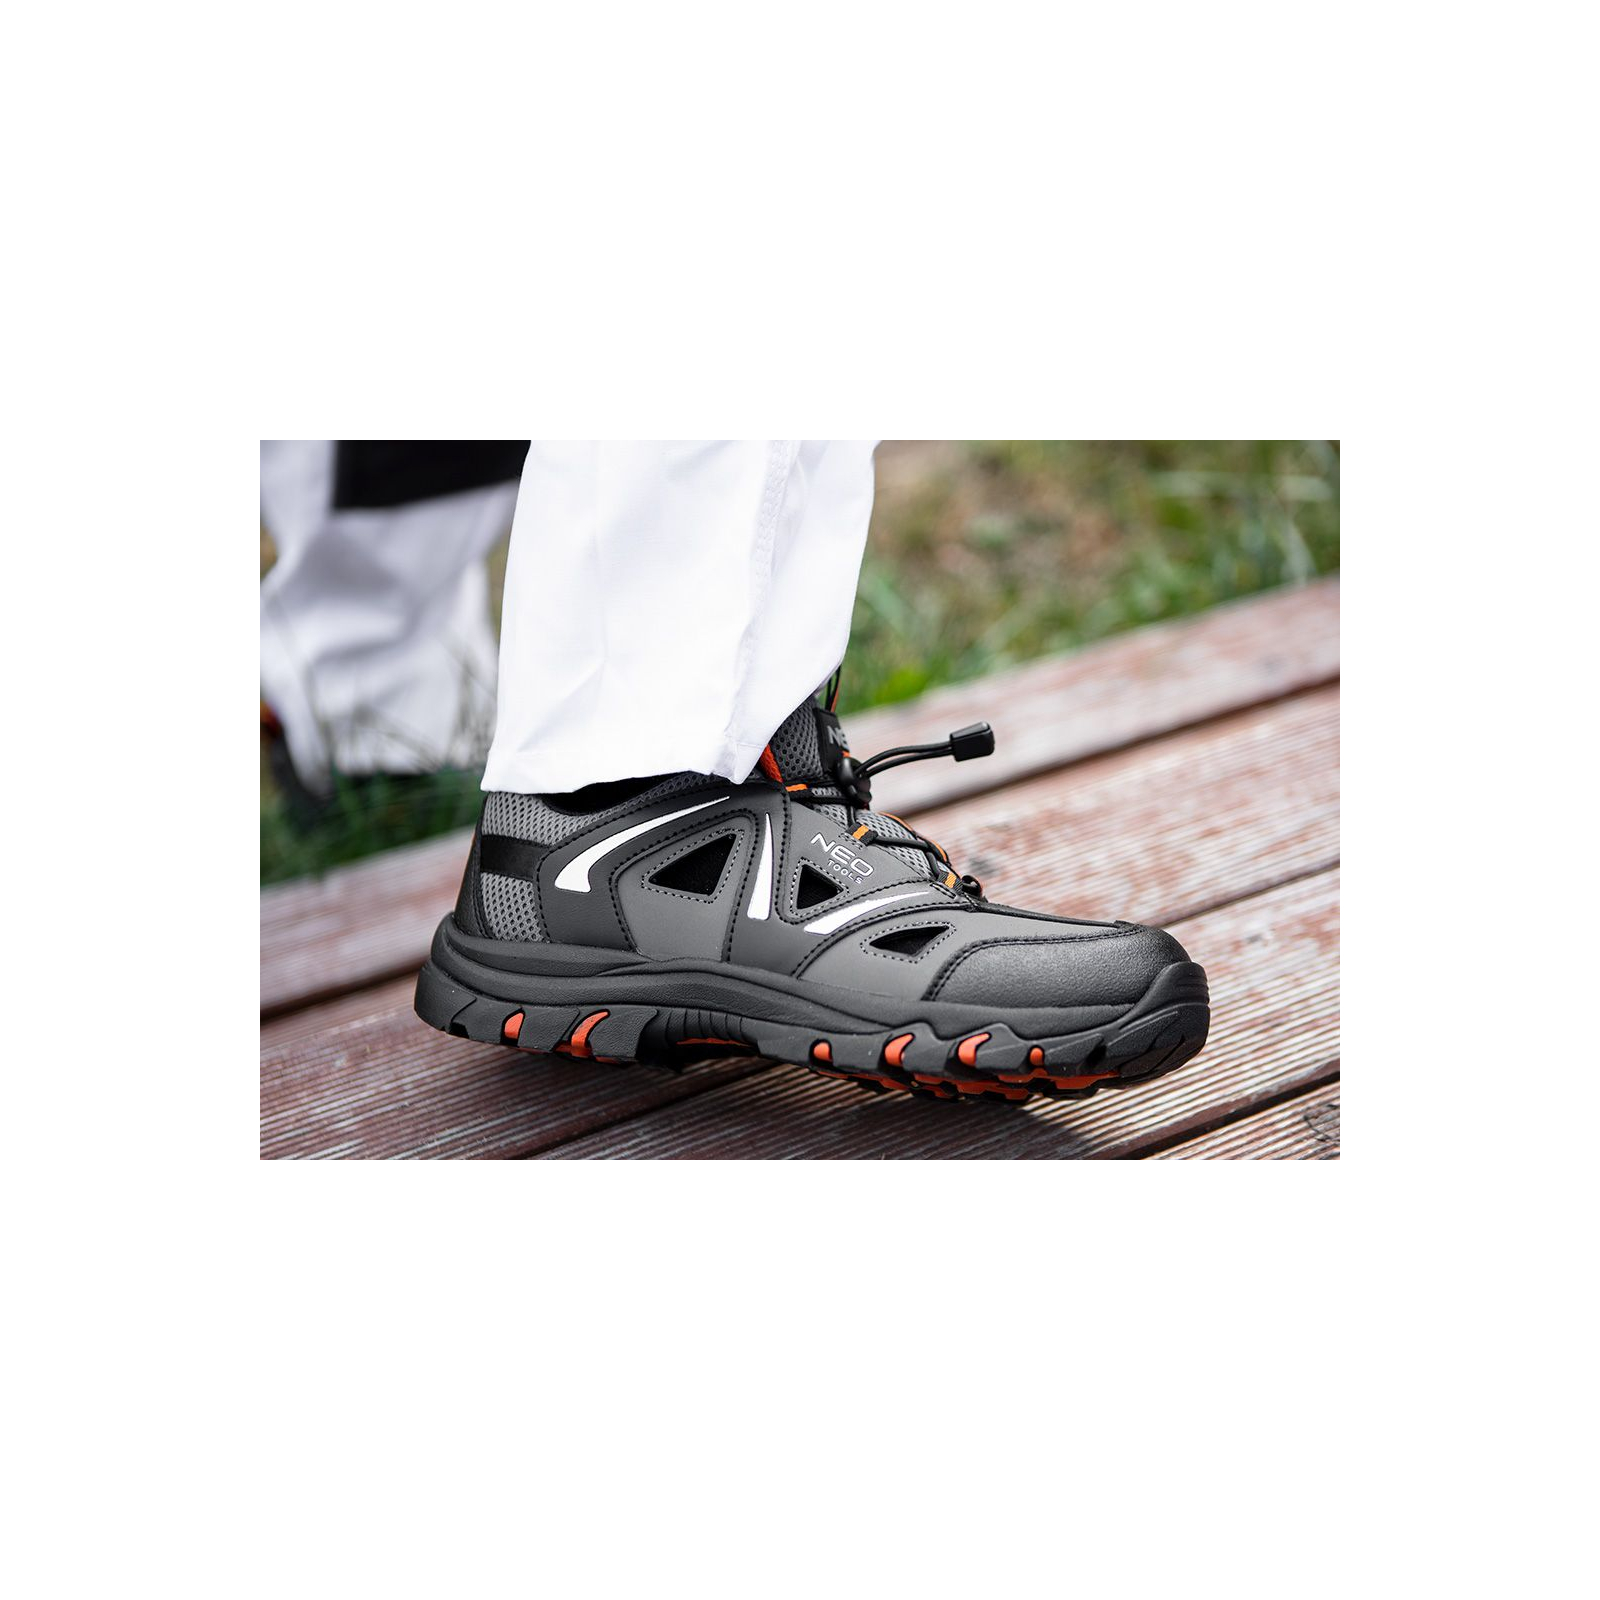 Ботинки рабочие Neo Tools кроссовки дышащие, подошва EVA, класс защиты OB, SRA, р.40 (82-721) изображение 3